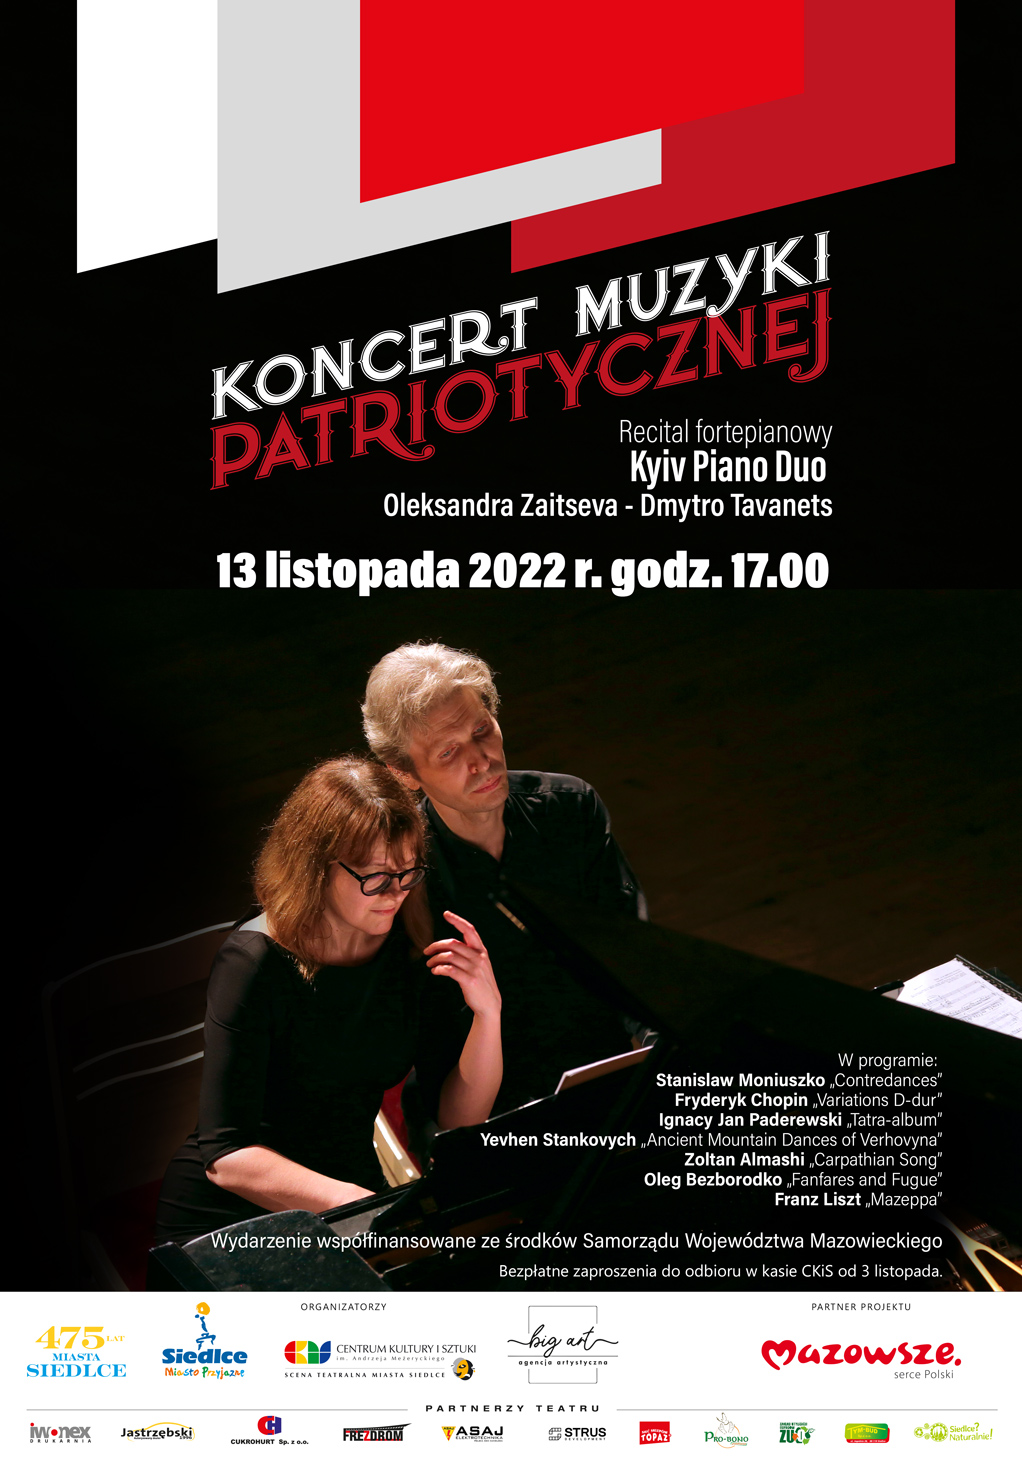 Koncert muzyki patriotycznej - Recital fortepianowy Kyiv Piano Duo 13 listopada na Scenie Teatralnej Miasta Siedlce